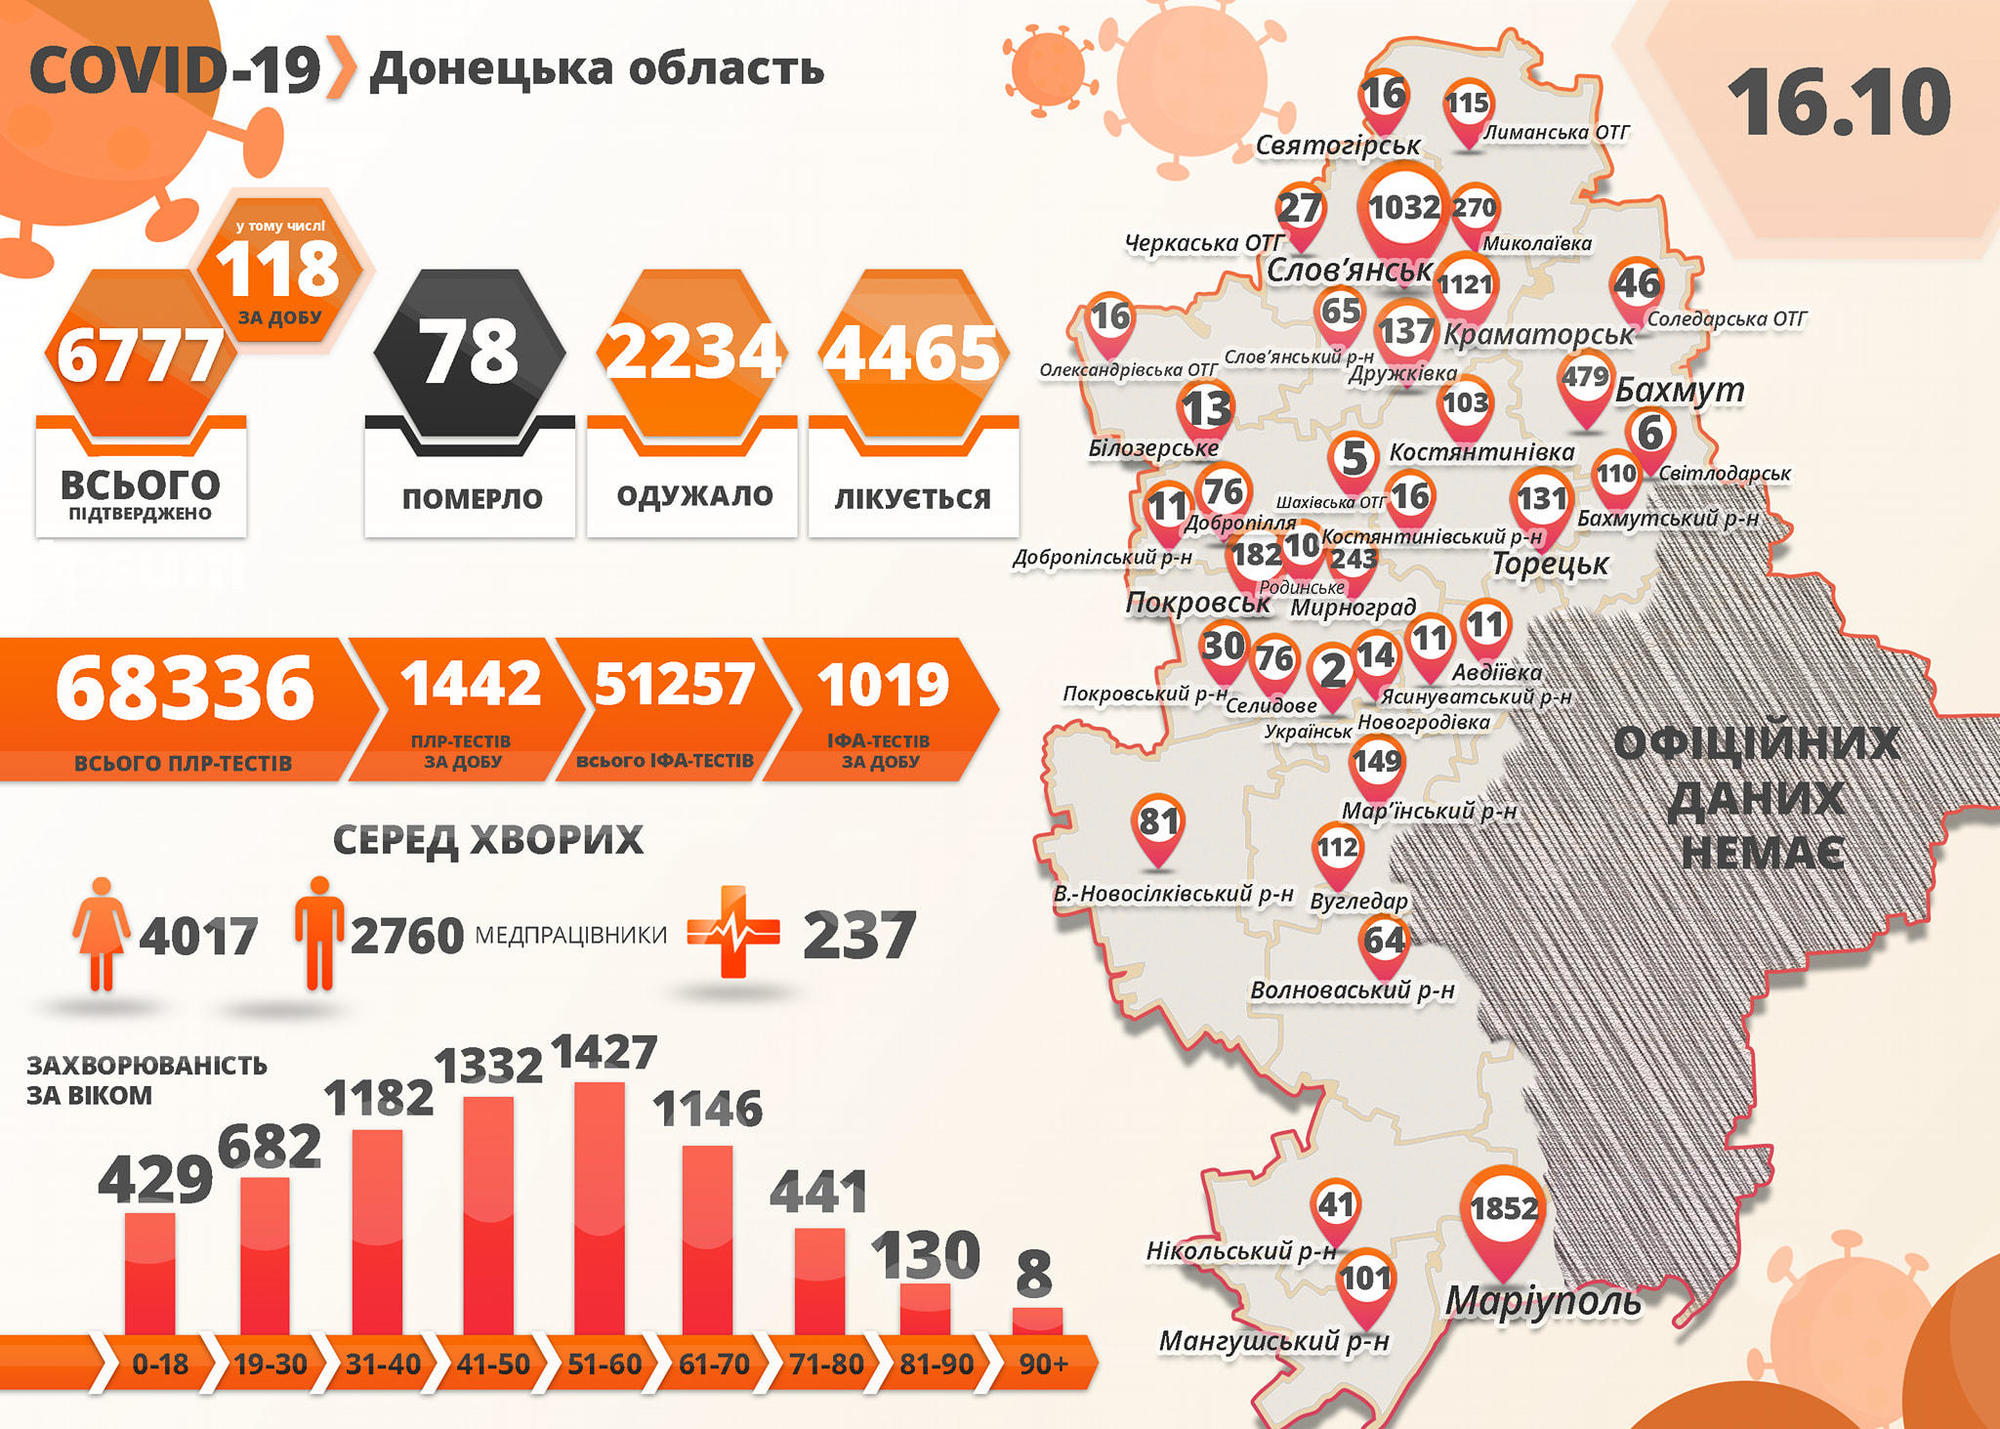 COVID-19: Украина снова бьет собственный рекорд, а на подконтрольной Донетчине – еще 118 больных